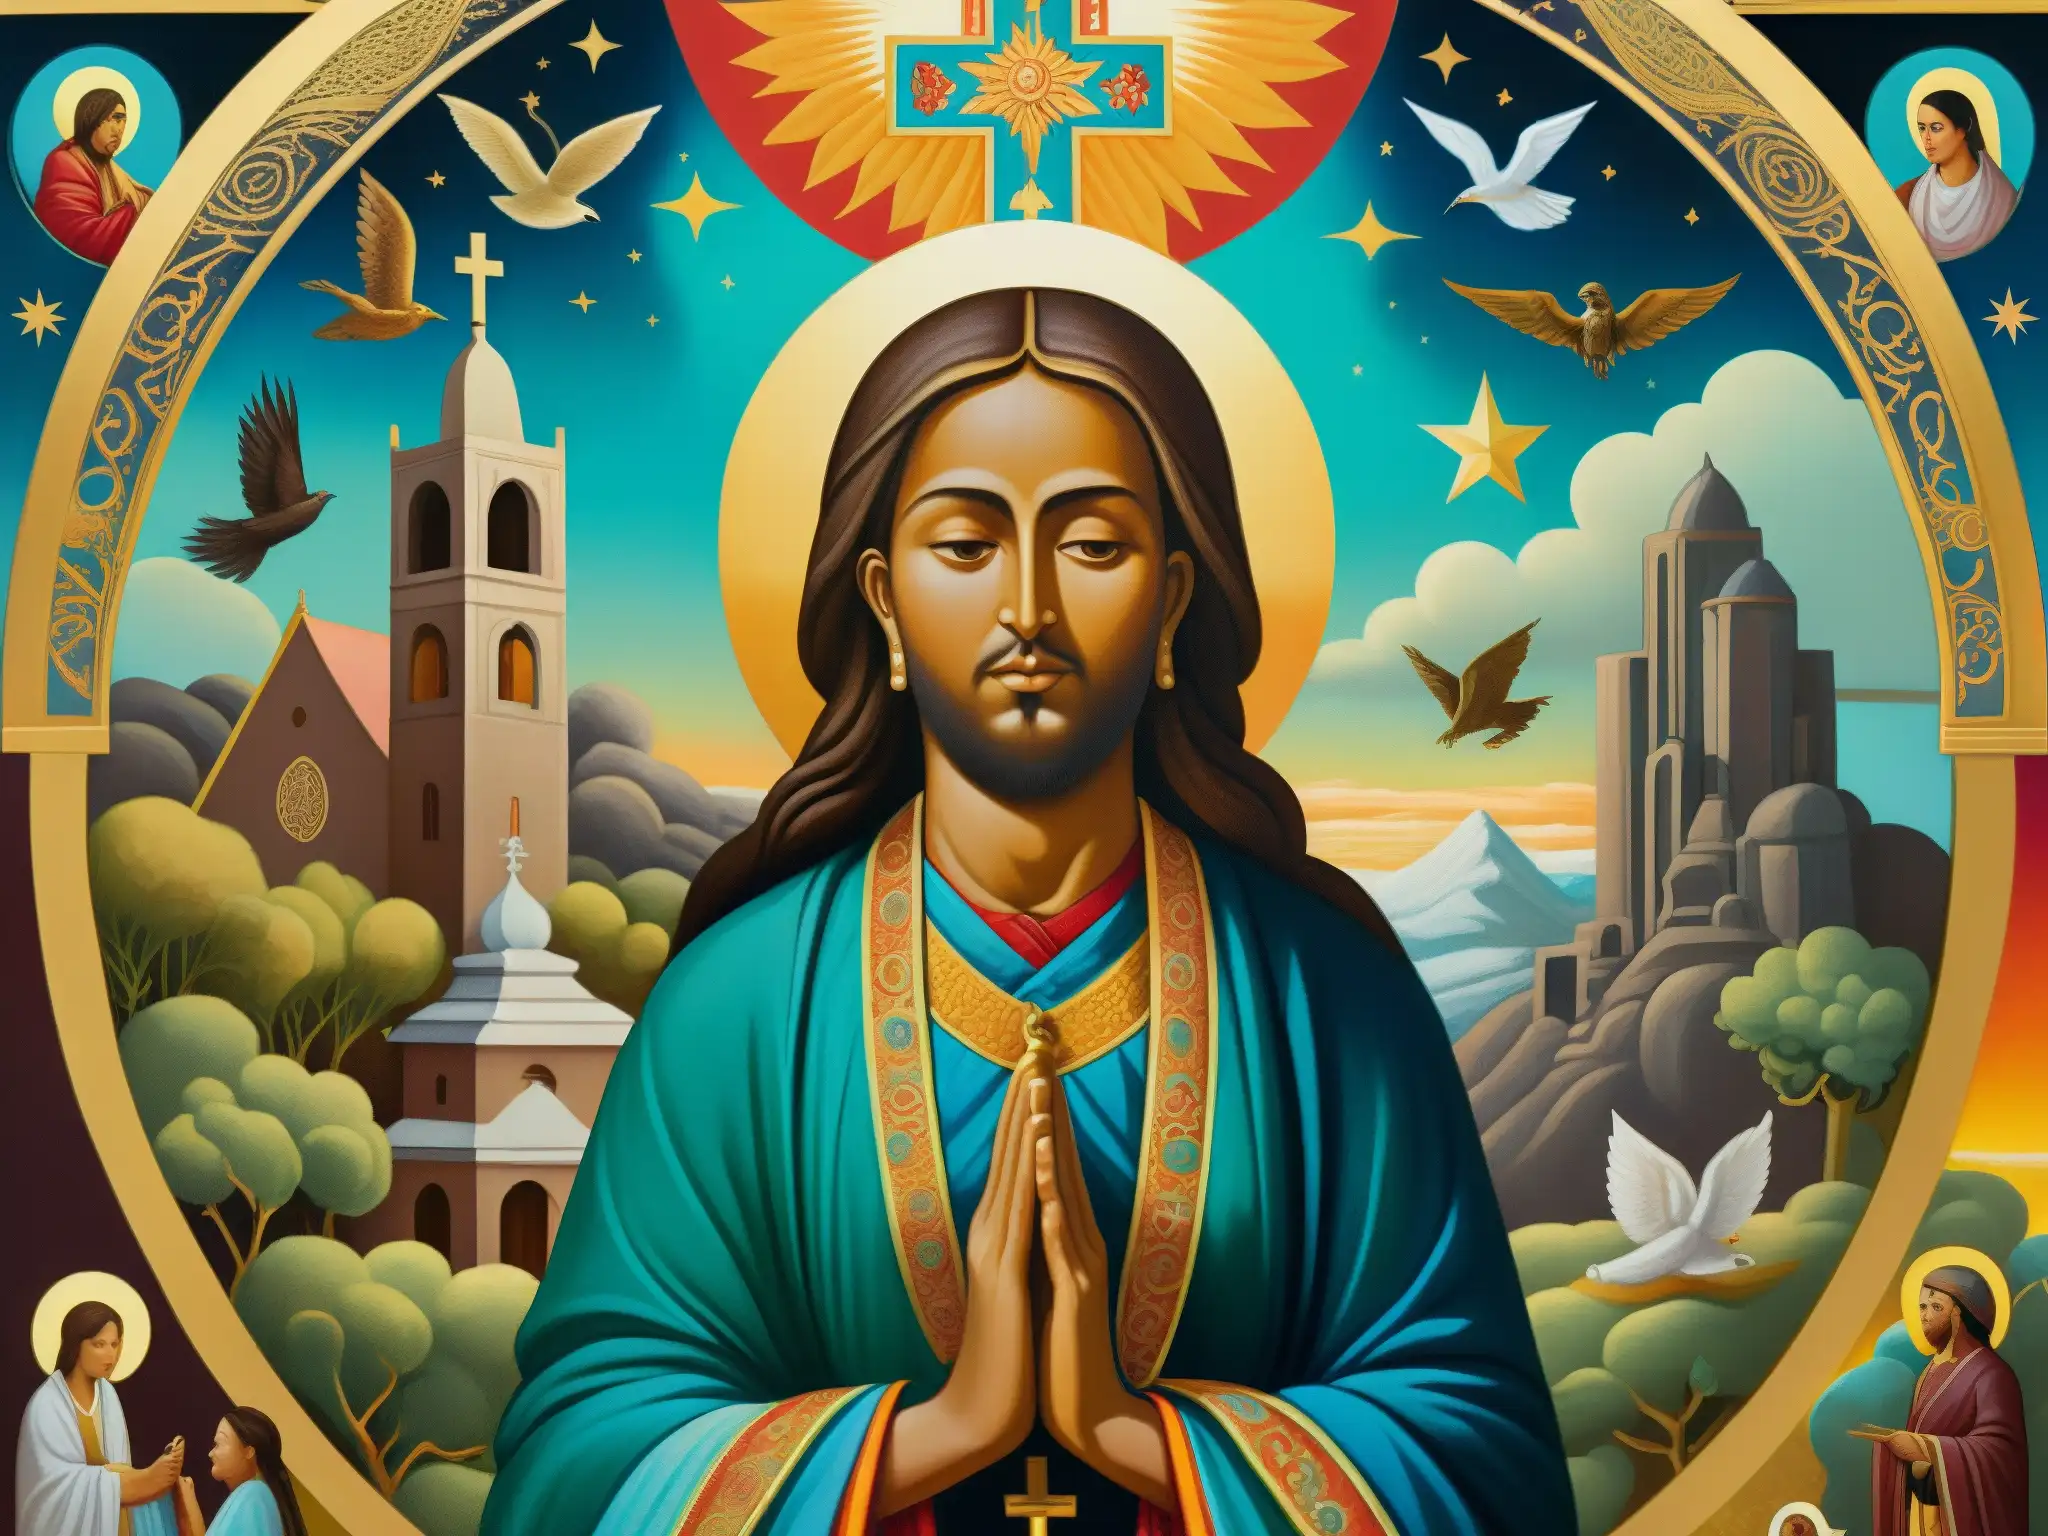 Detallada pintura de figura religiosa rodeada de imágenes oníricas y leyendas urbanas, con intensos colores y simbolismo religioso